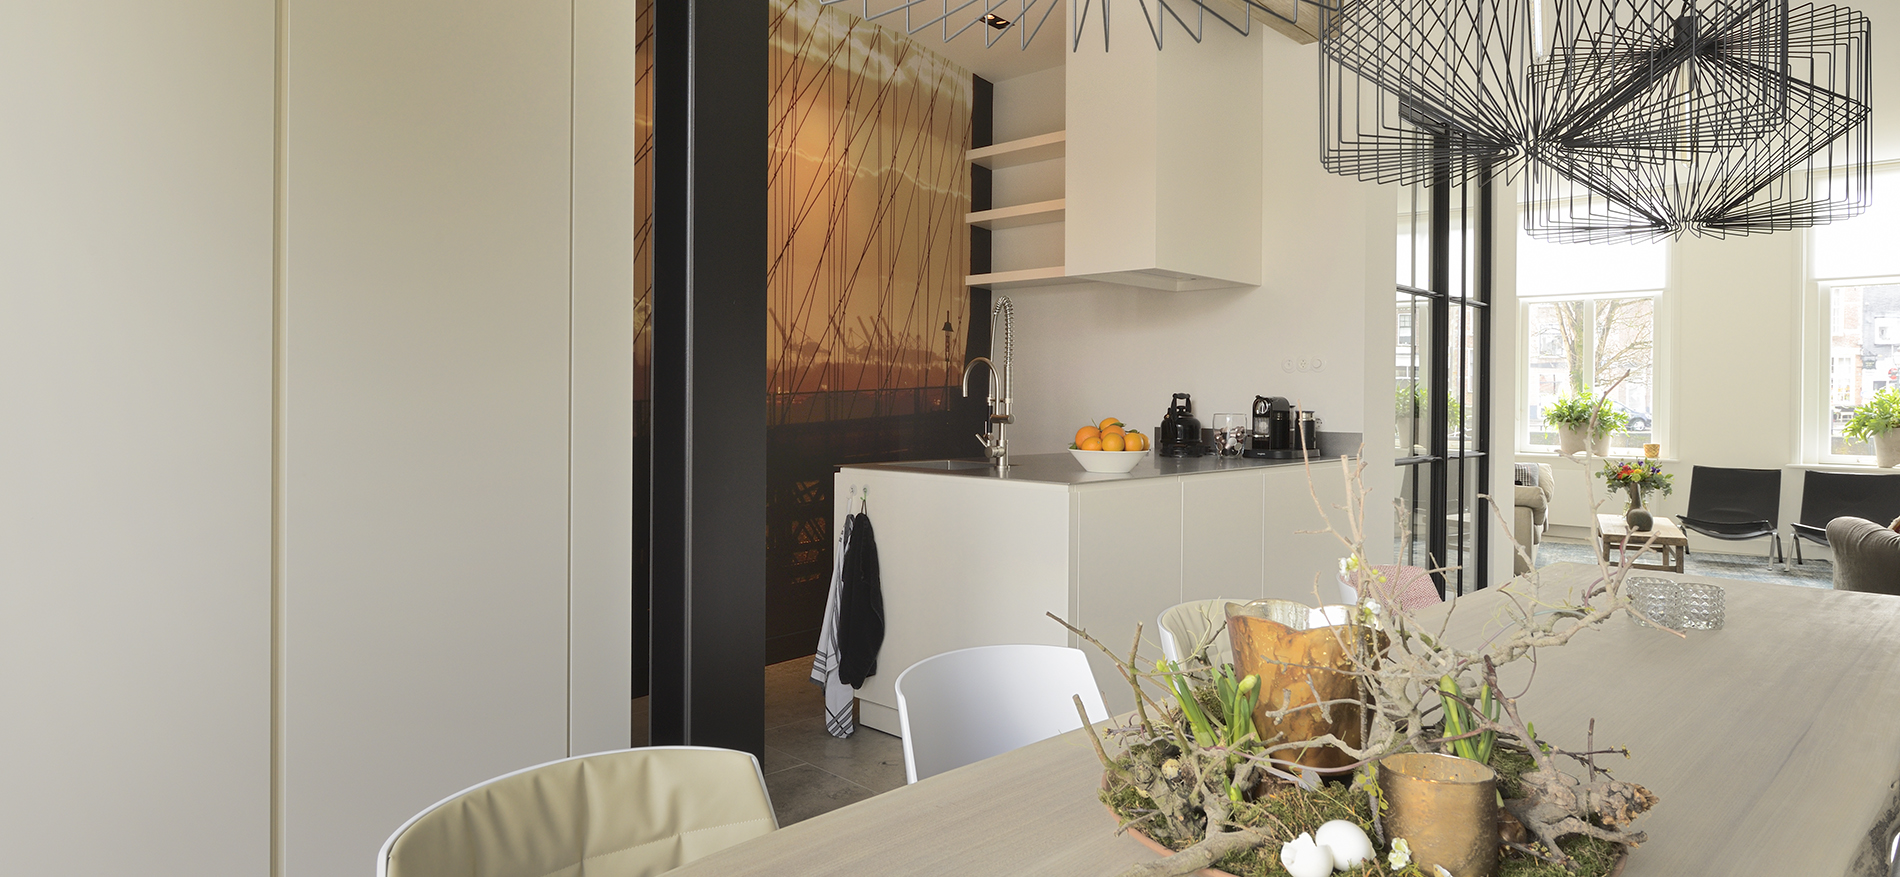 Top interieur op maat voor Herenhuis in Goes - Residential Interior Design